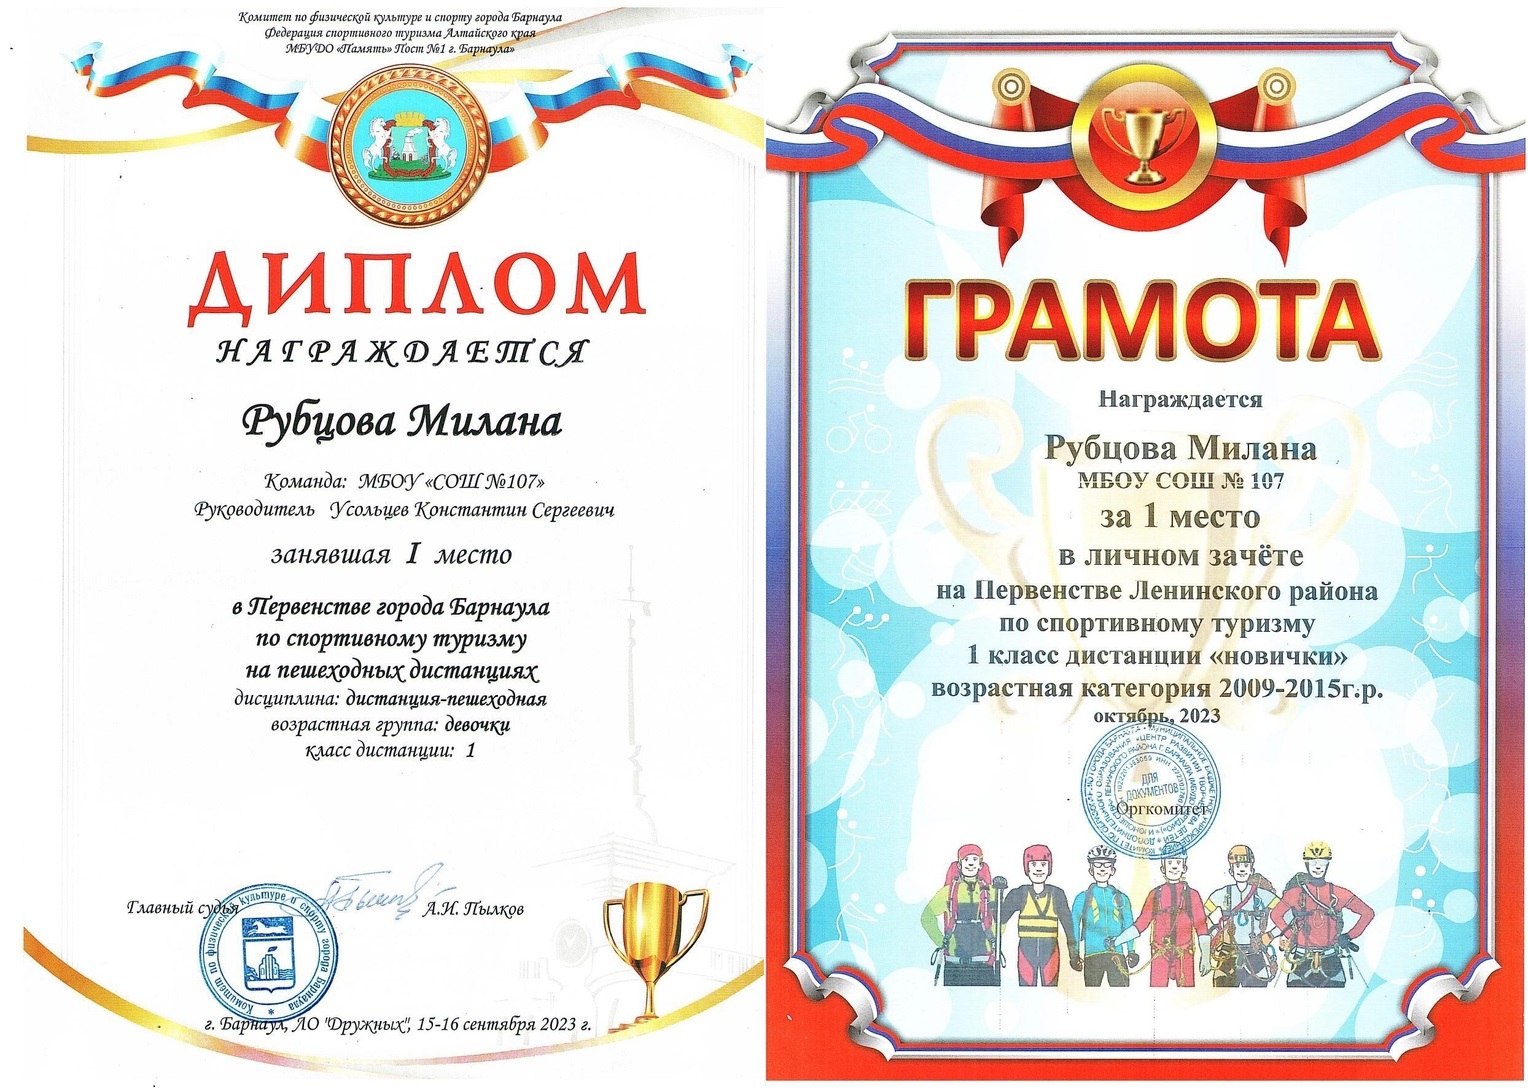 Ученицы нашей школы стали победителями Первенства города Барнаула и Ленинского района..